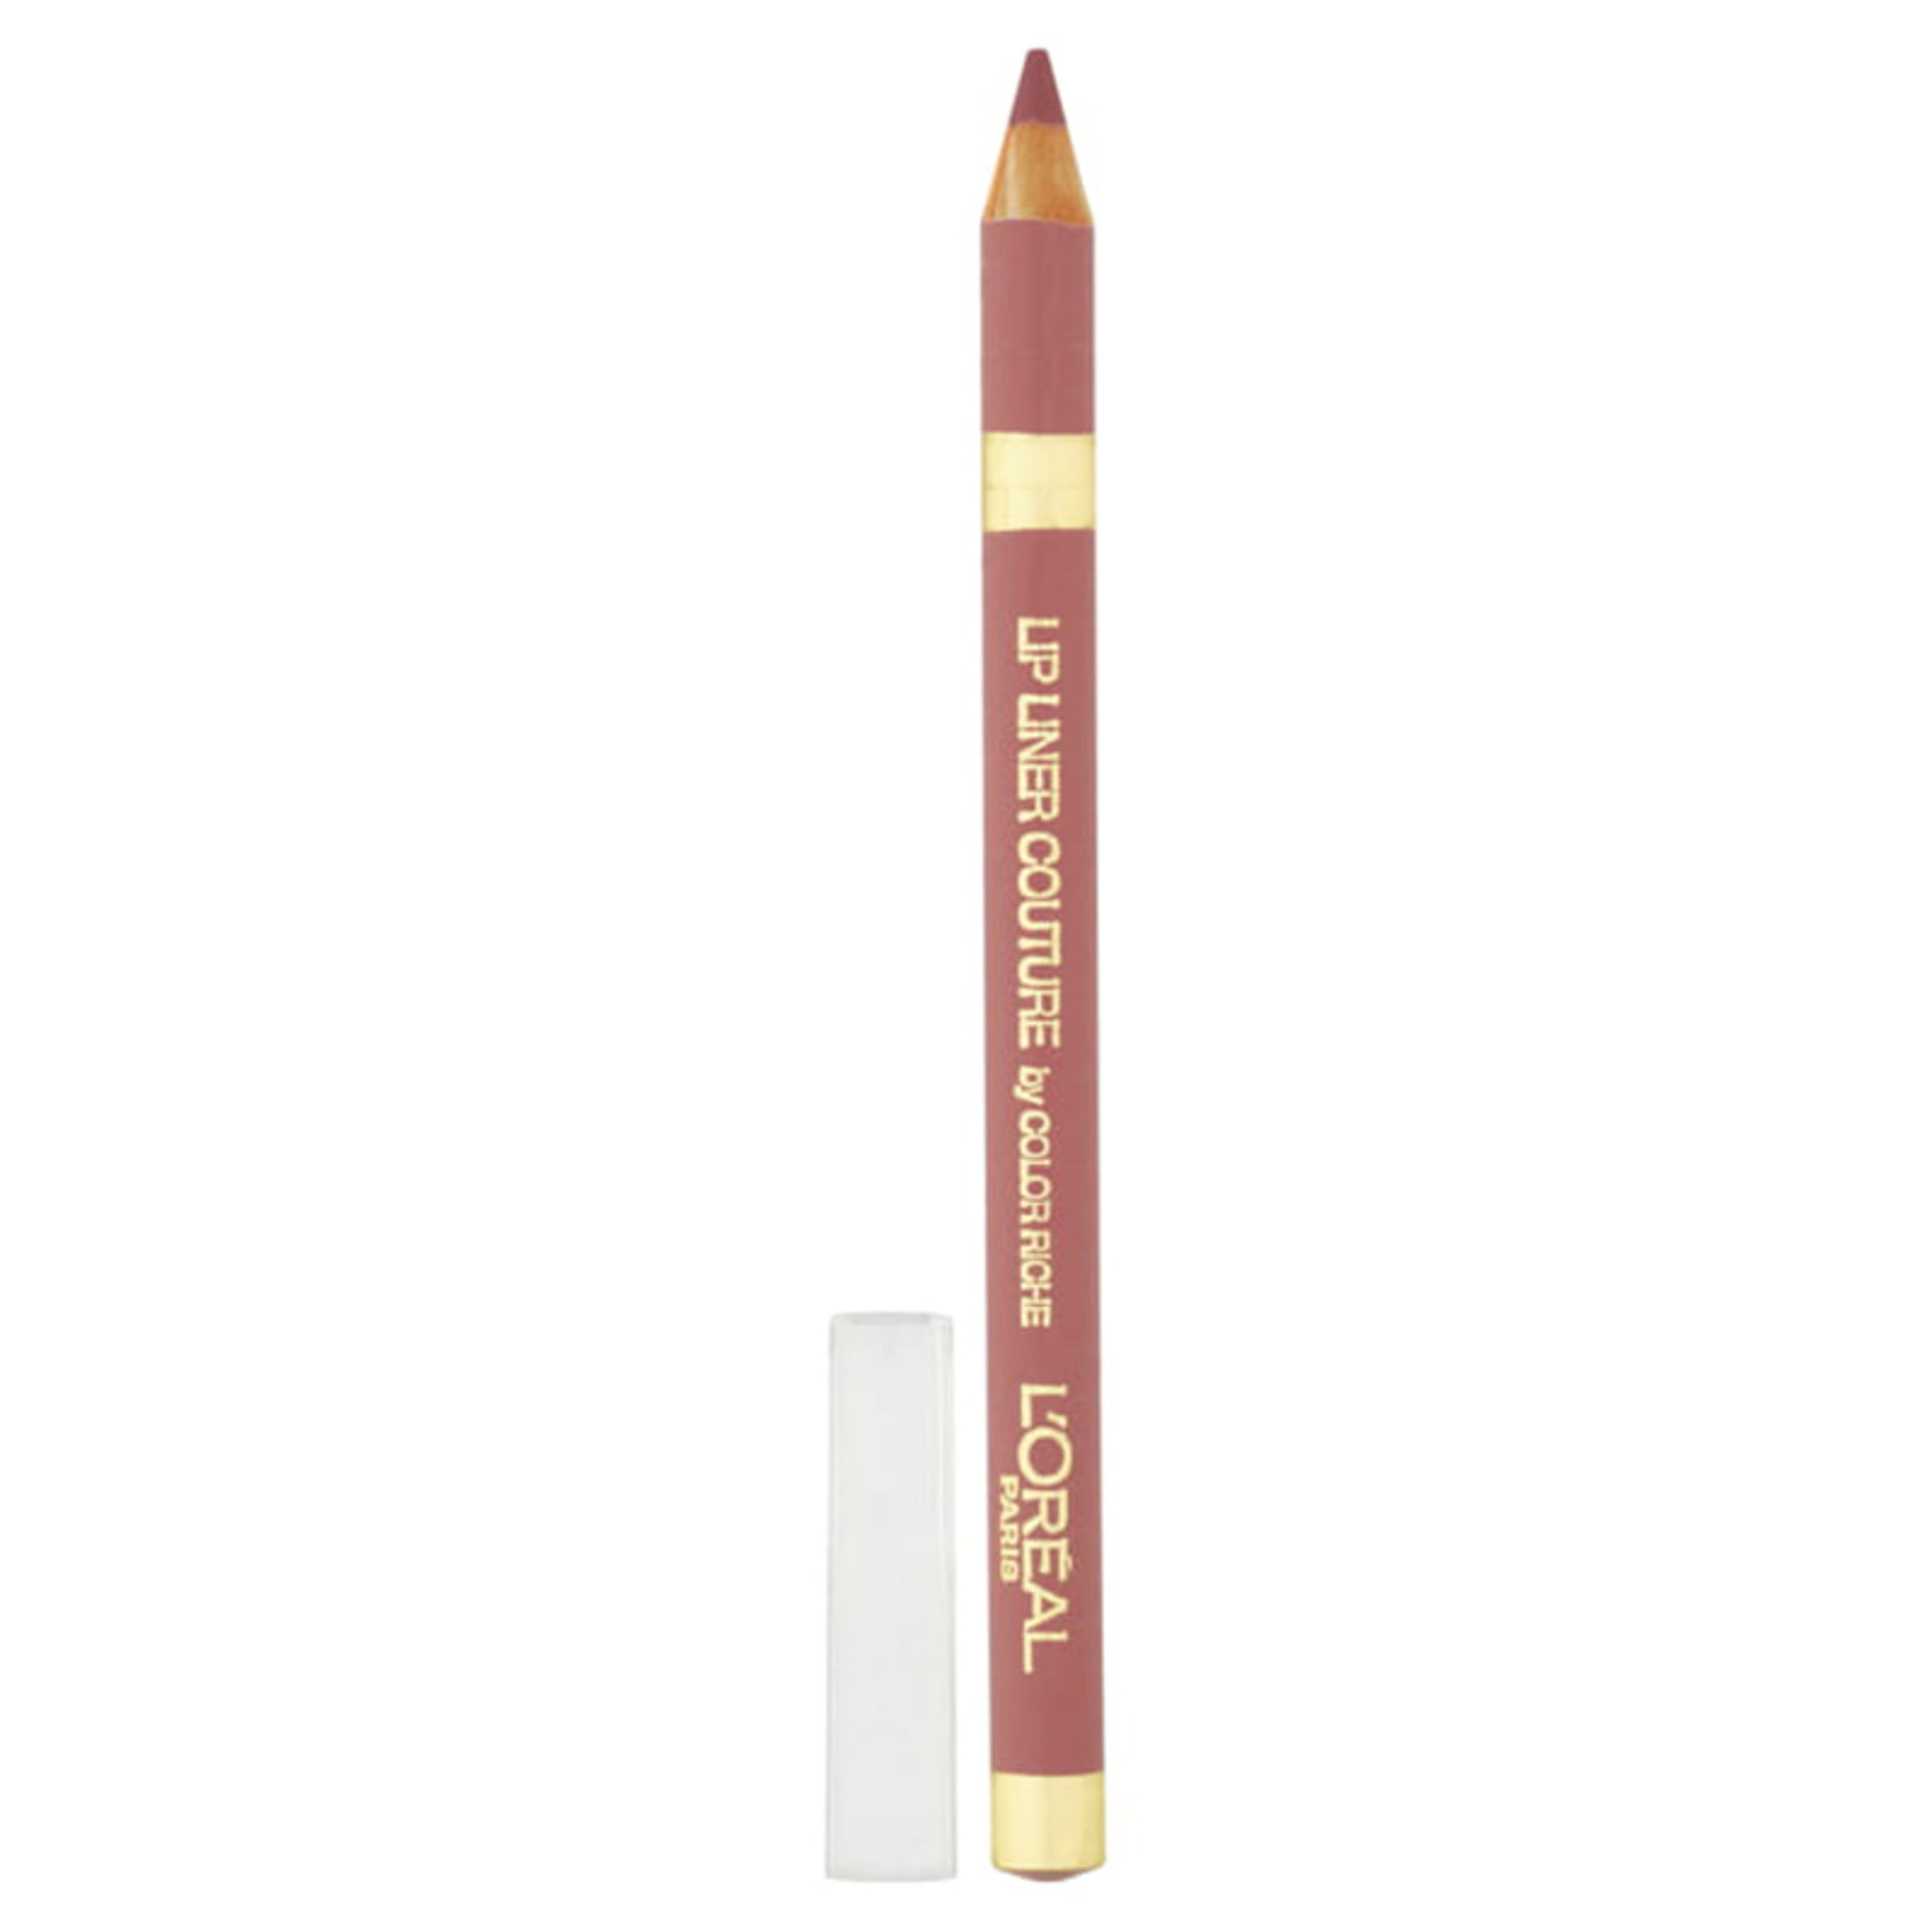 L'Oréal Paris Color Riche ajakkontúr ceruza /630 - 1 db-3